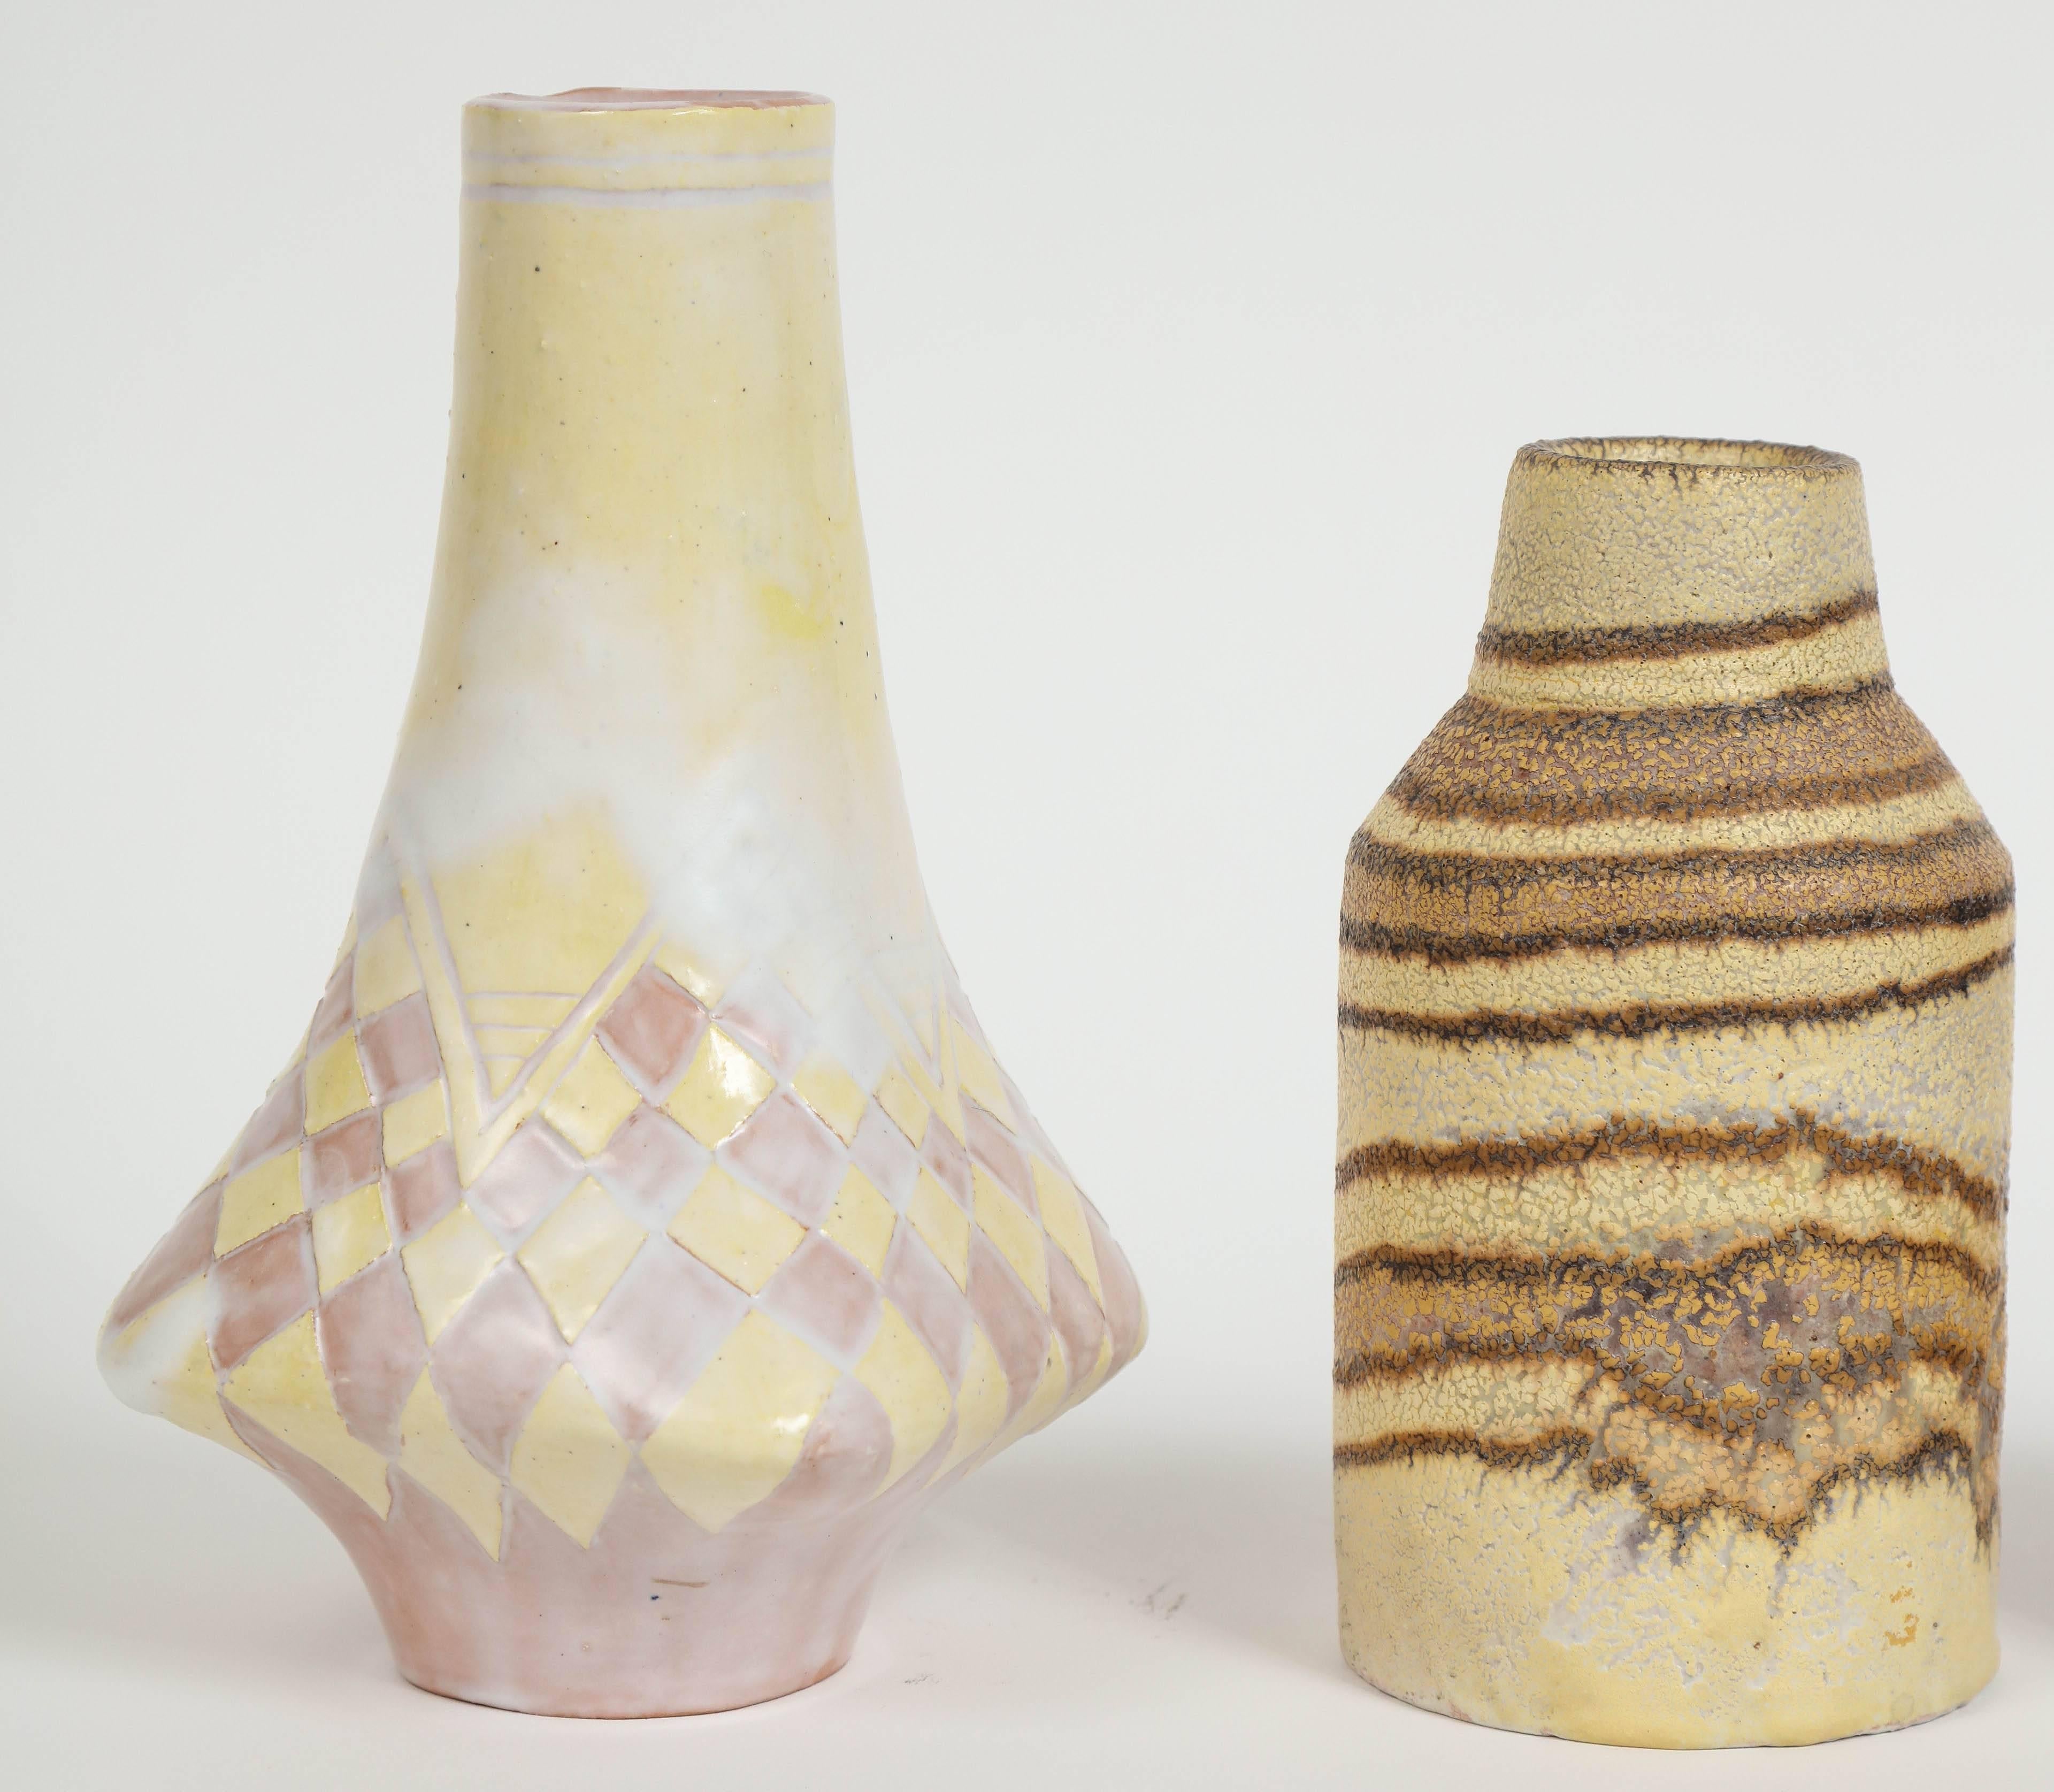 Vernissé Petits vases en céramique Marcello Fantoni, vers les années 1960 - 1970 en vente